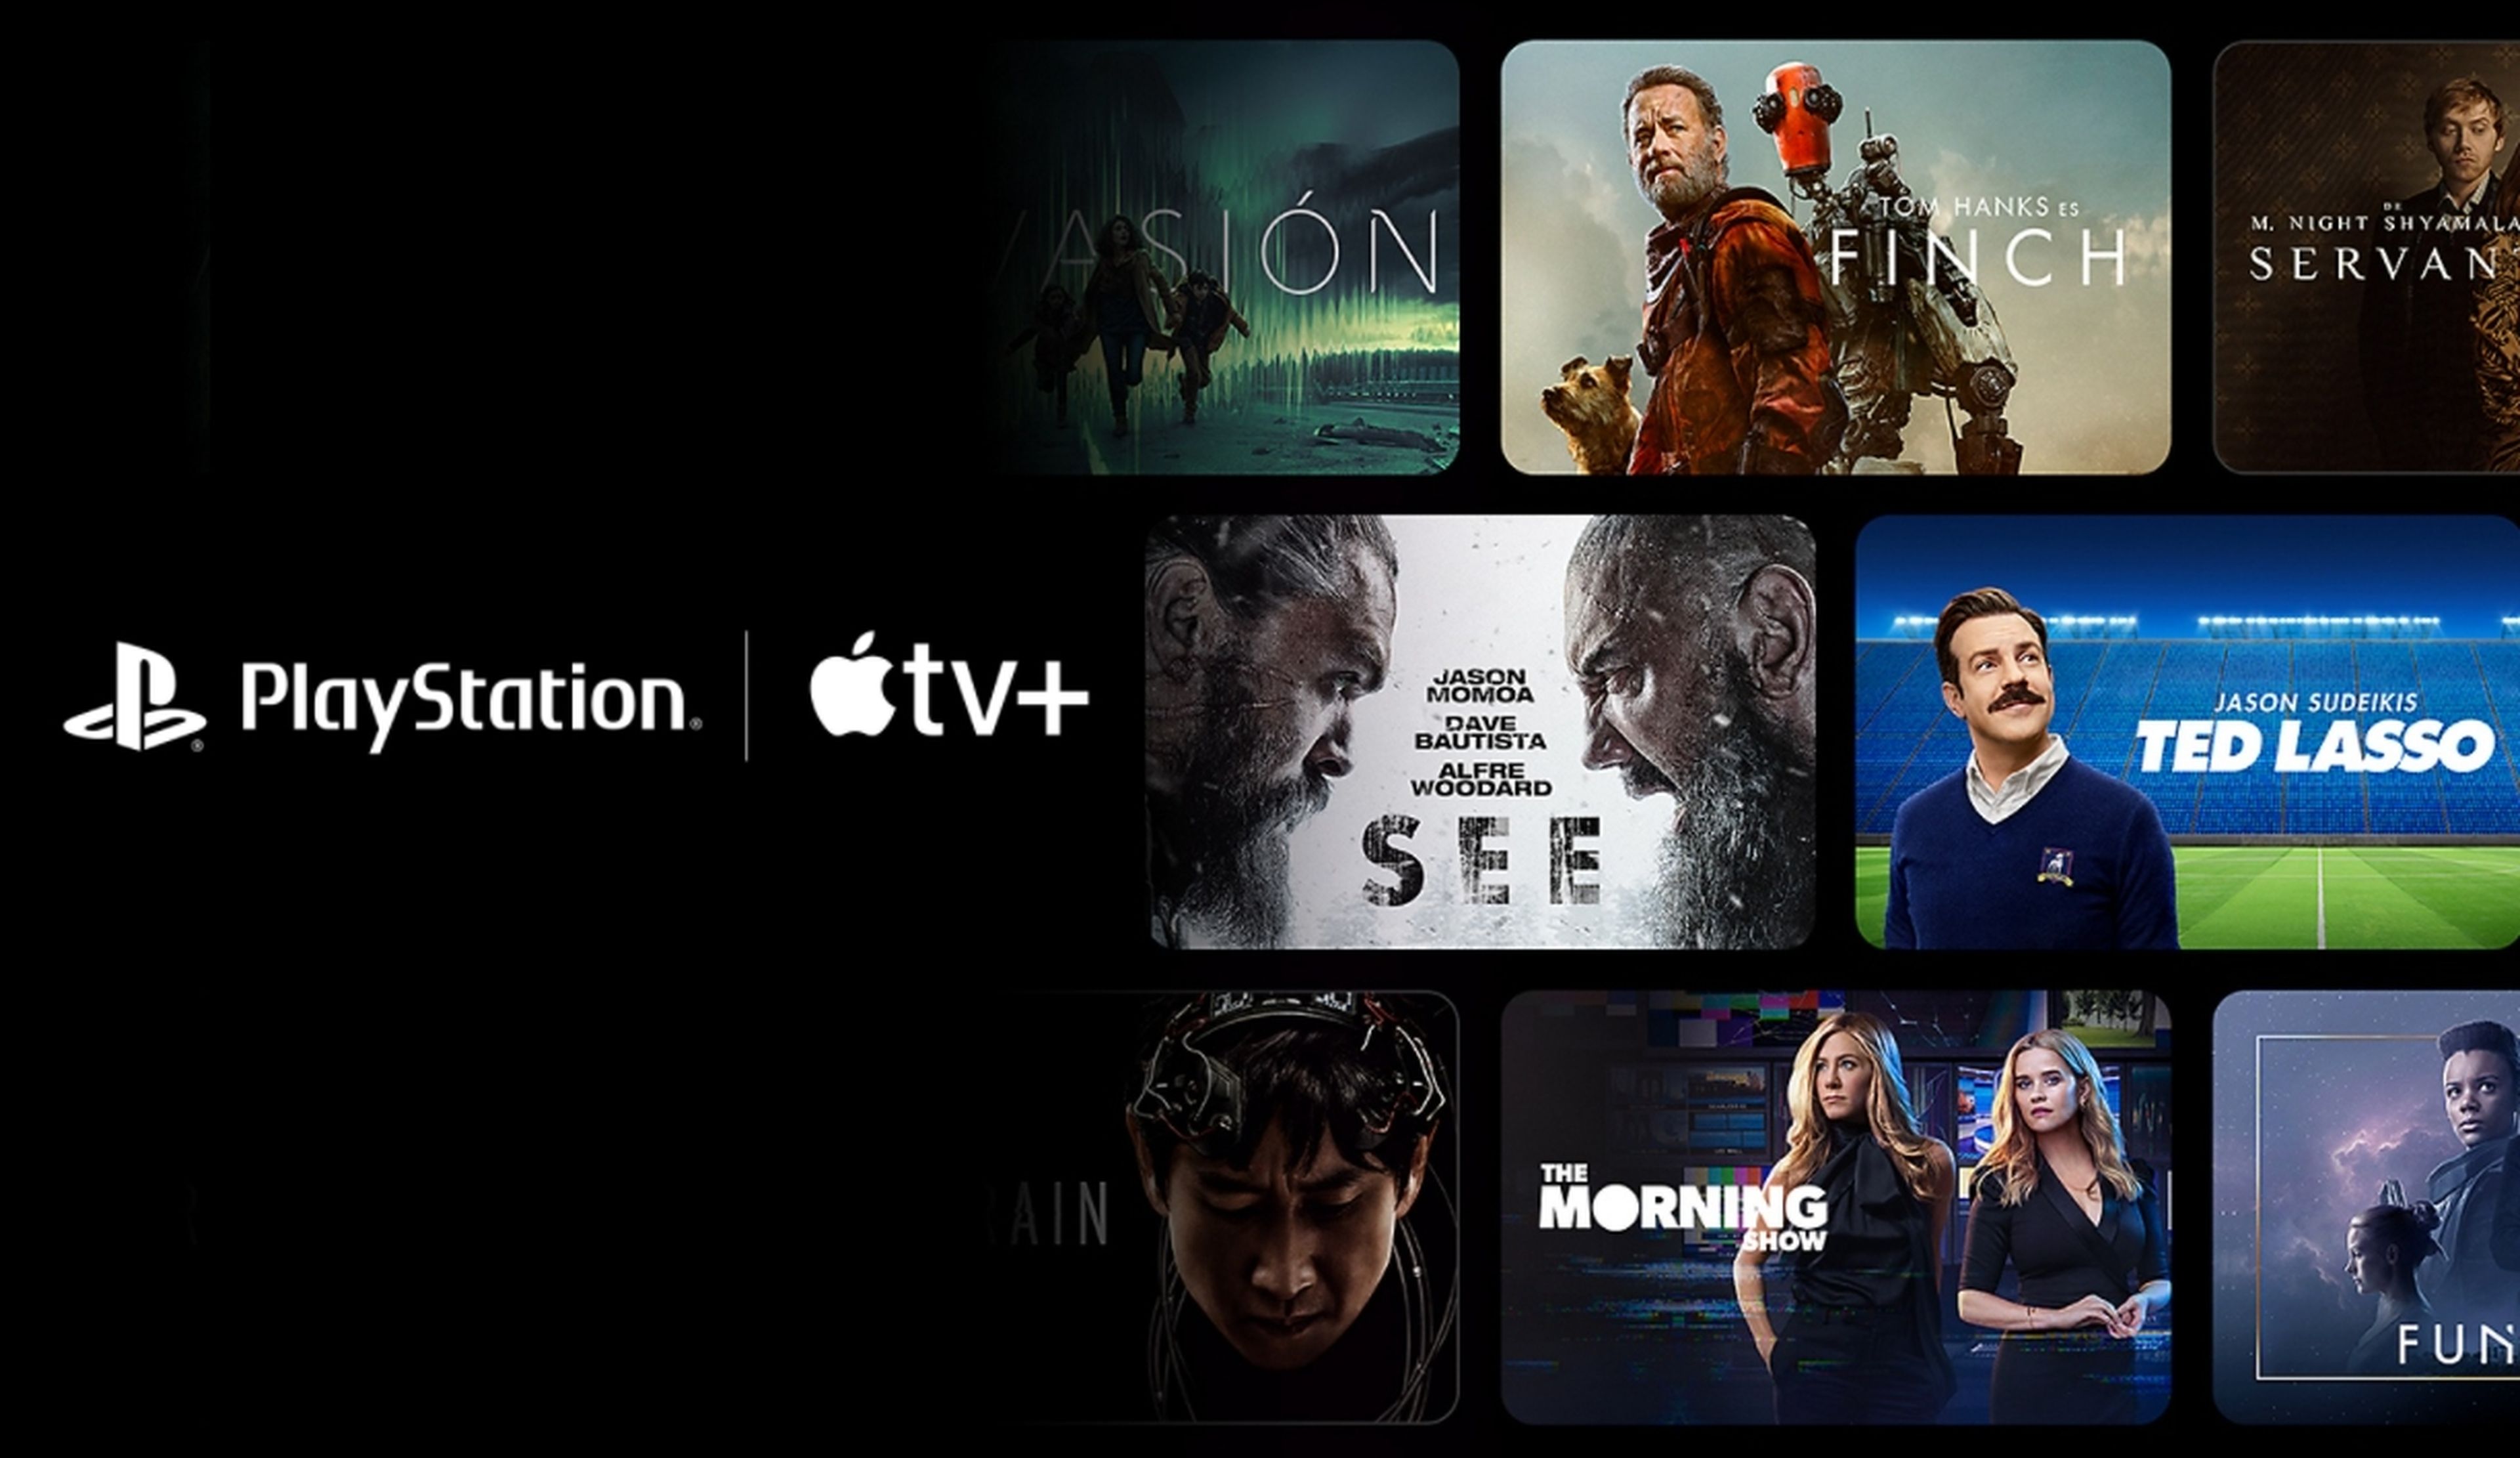 Así puedes conseguir tres meses de Apple TV+ gratis, si tienes una consola PS4